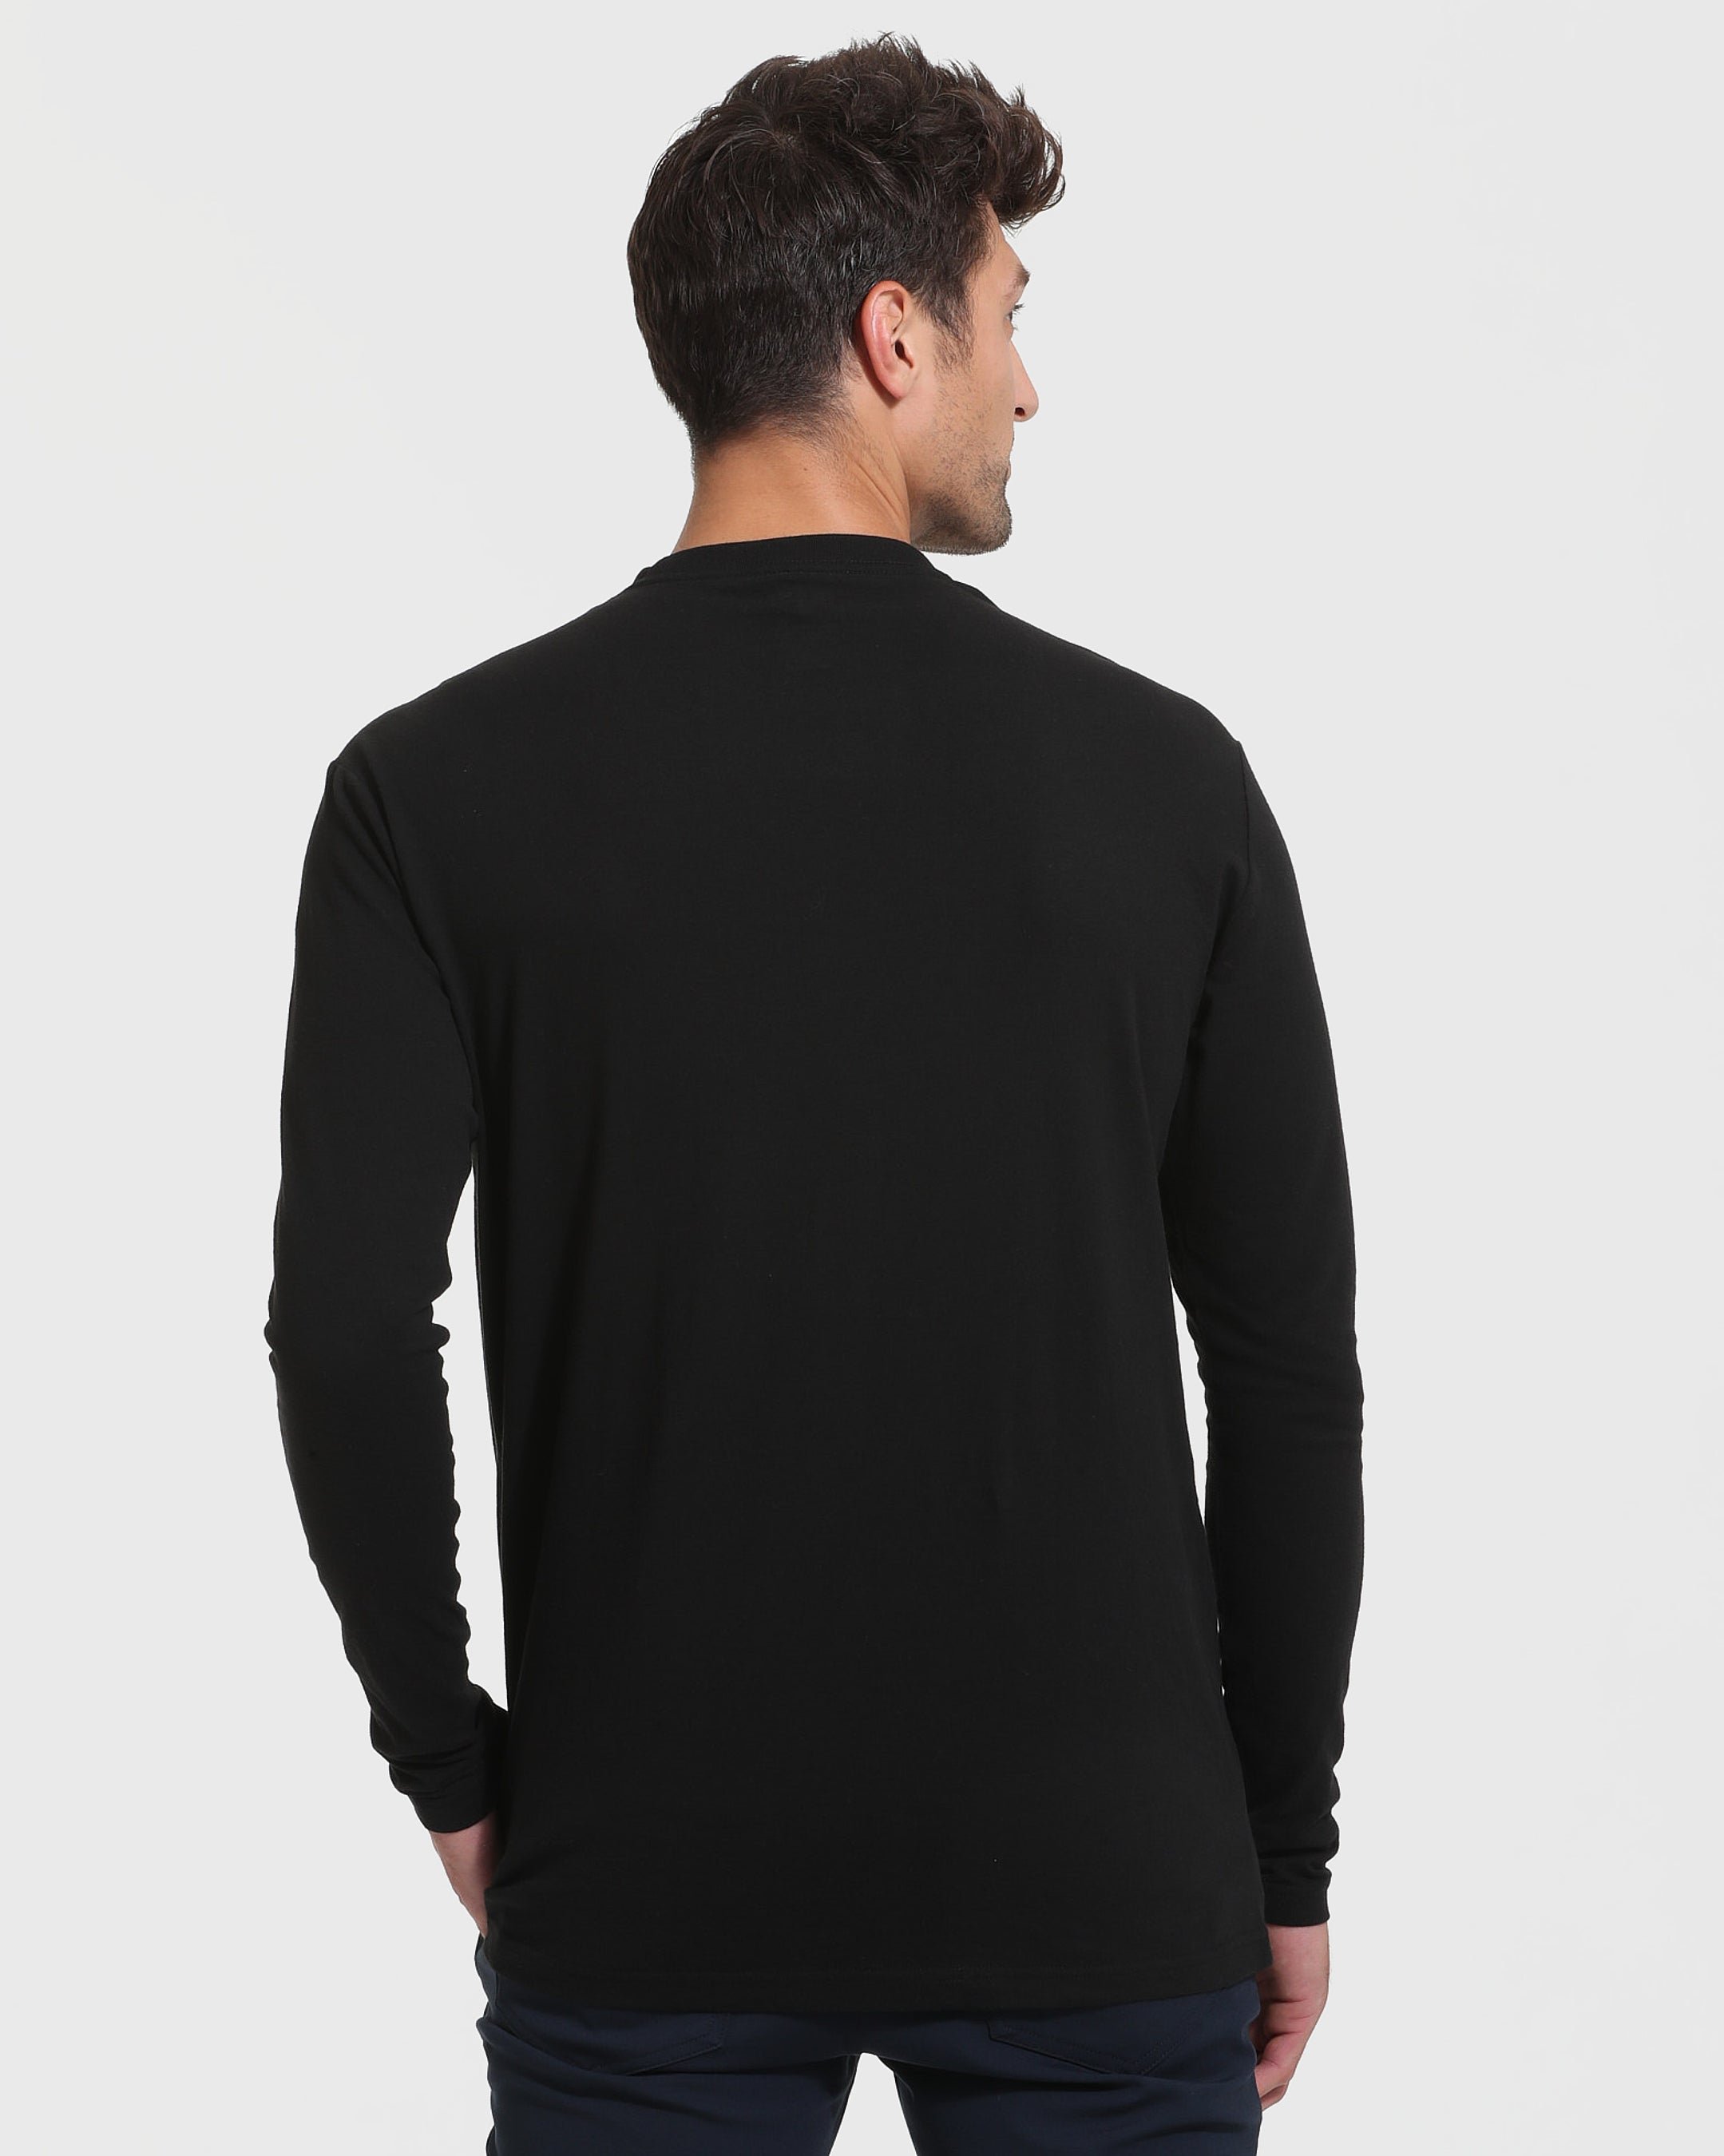 Black Tall Long Sleeve T-Shirt